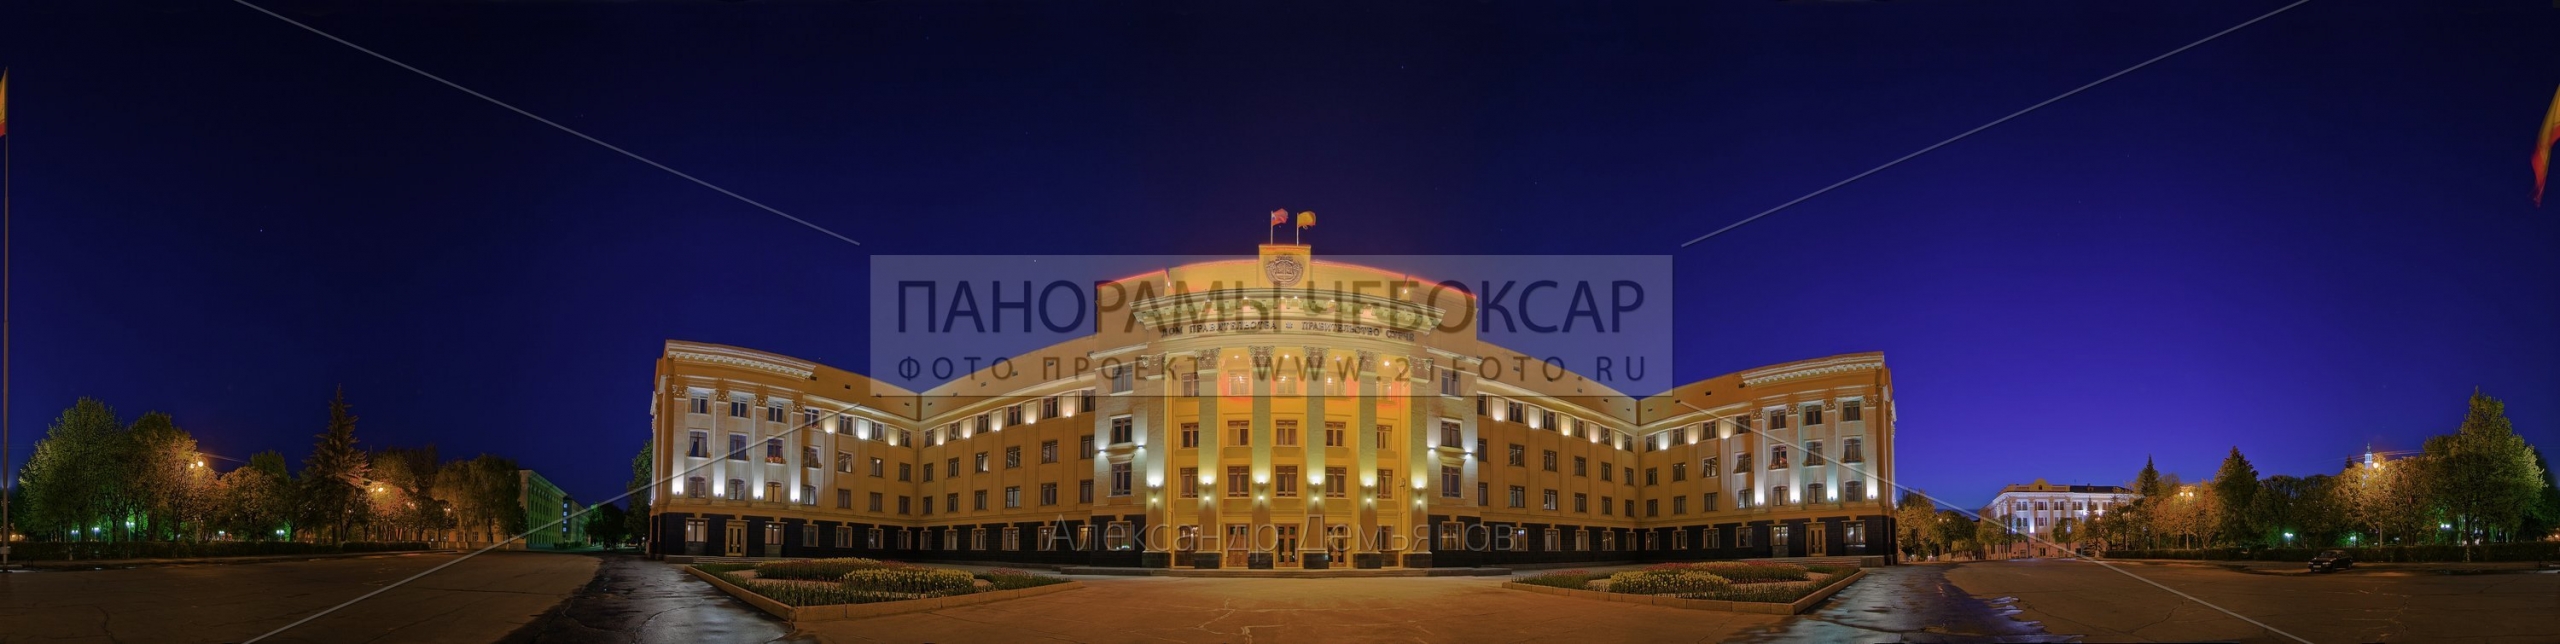 Фото панорама Дом правительства Чувашской Республики (№3)